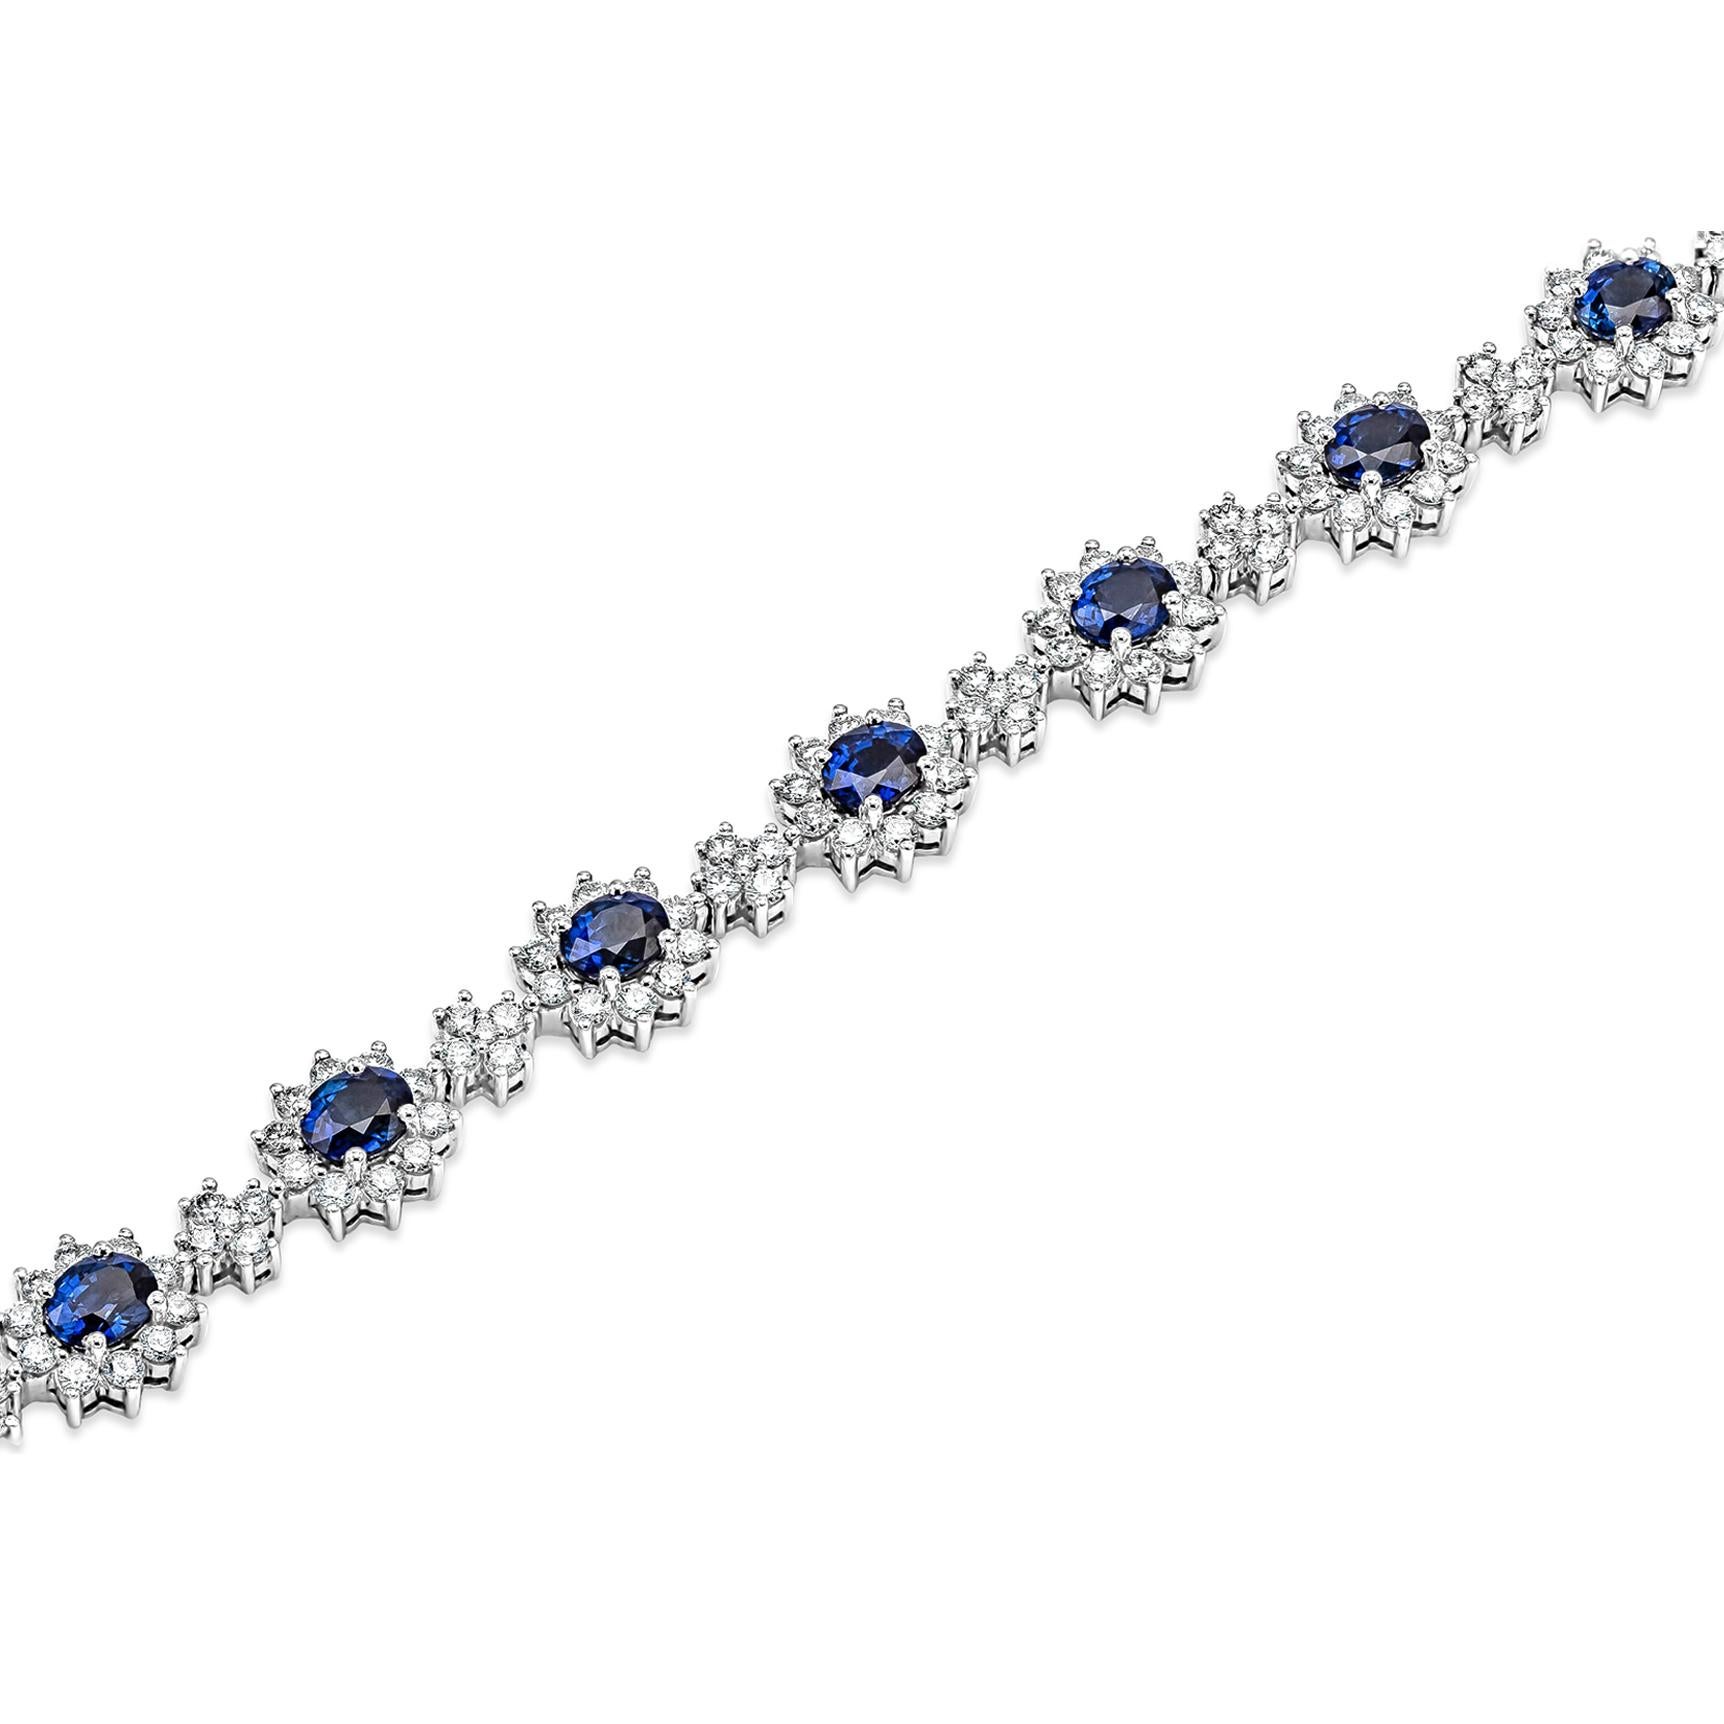 Bringen Sie Farbe in Ihren Stil mit diesem wunderschönen Saphir-Blumenarmband. 12 blaue Saphire im Ovalschliff, umgeben von einer einzigen Reihe funkelnder runder Diamanten in einer Fassung mit floralem Motiv. Zwischen jeder Saphirblüte befindet